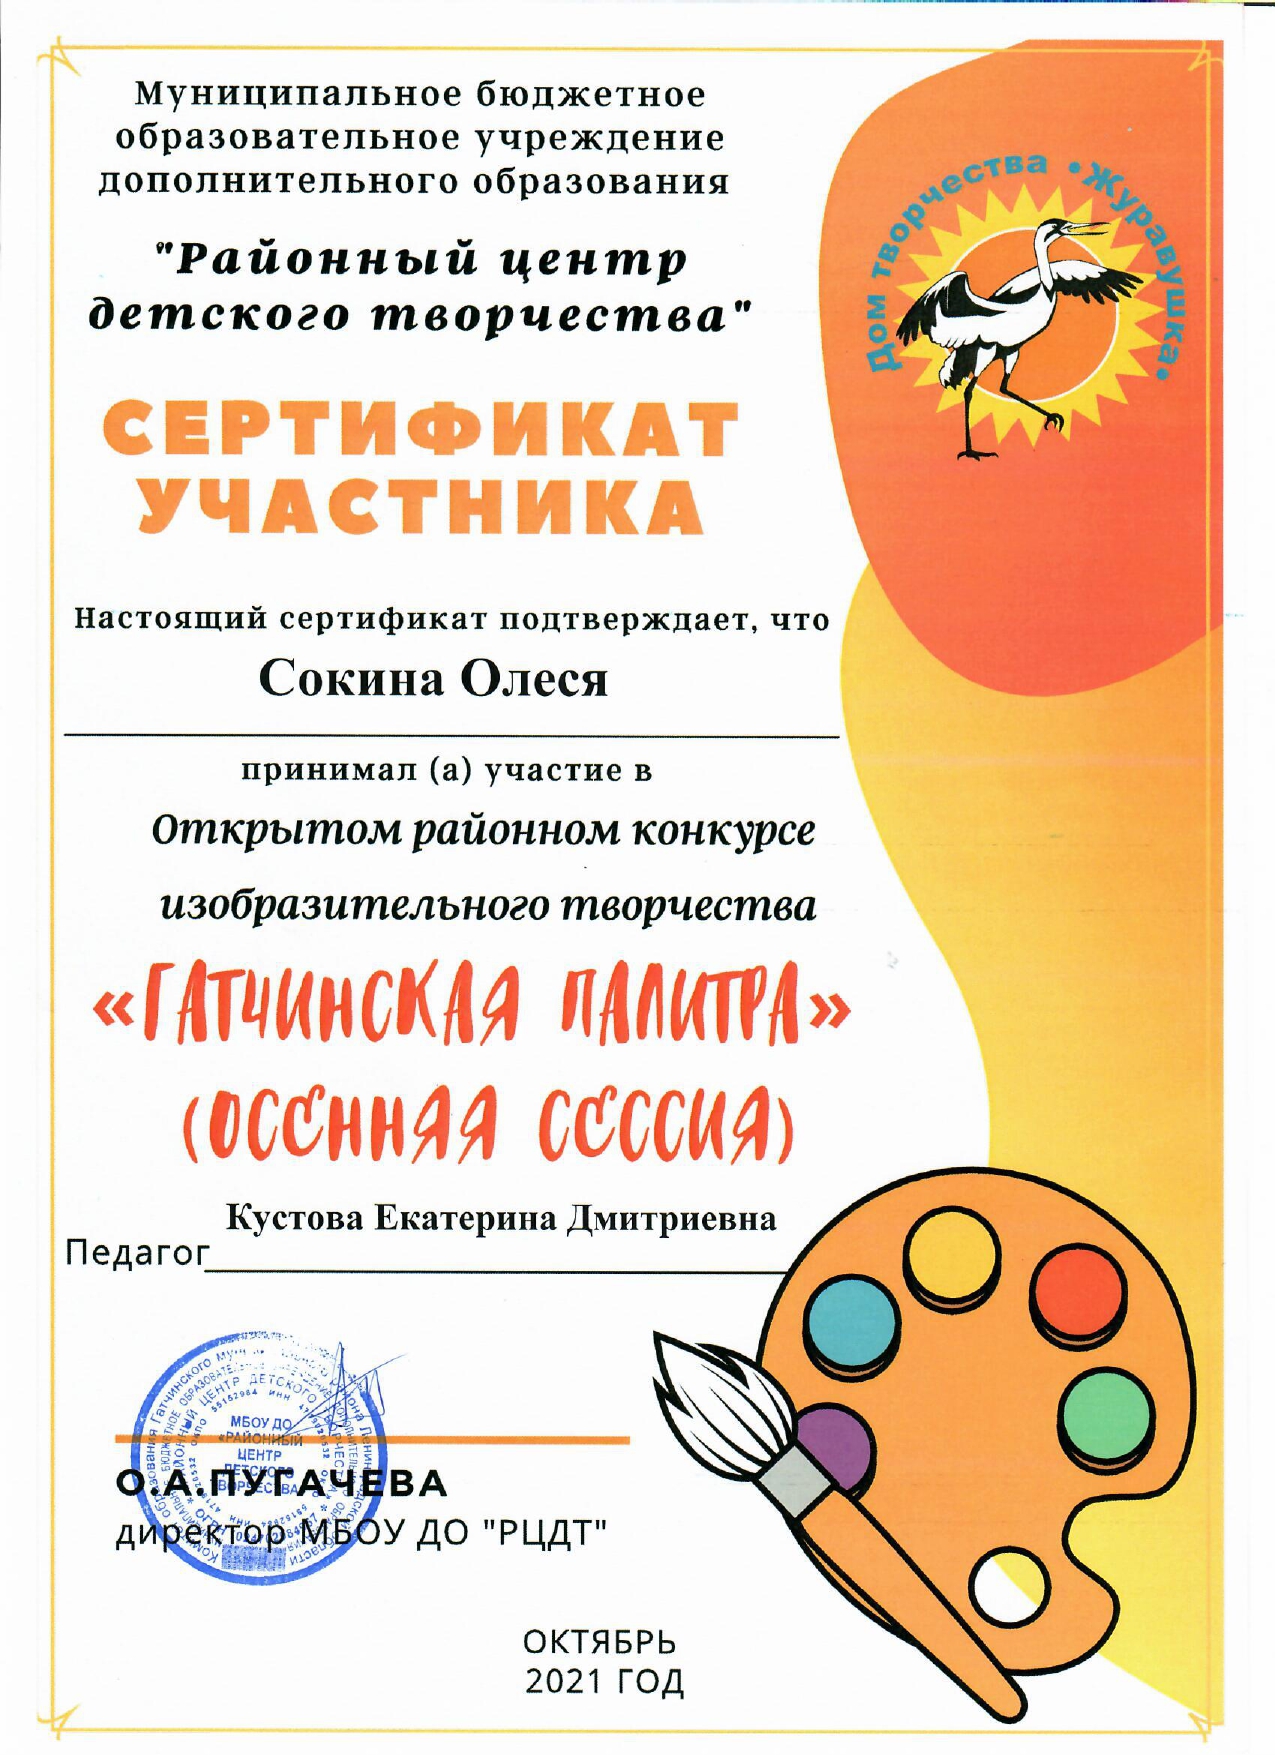 сертификат Кустова page 0001